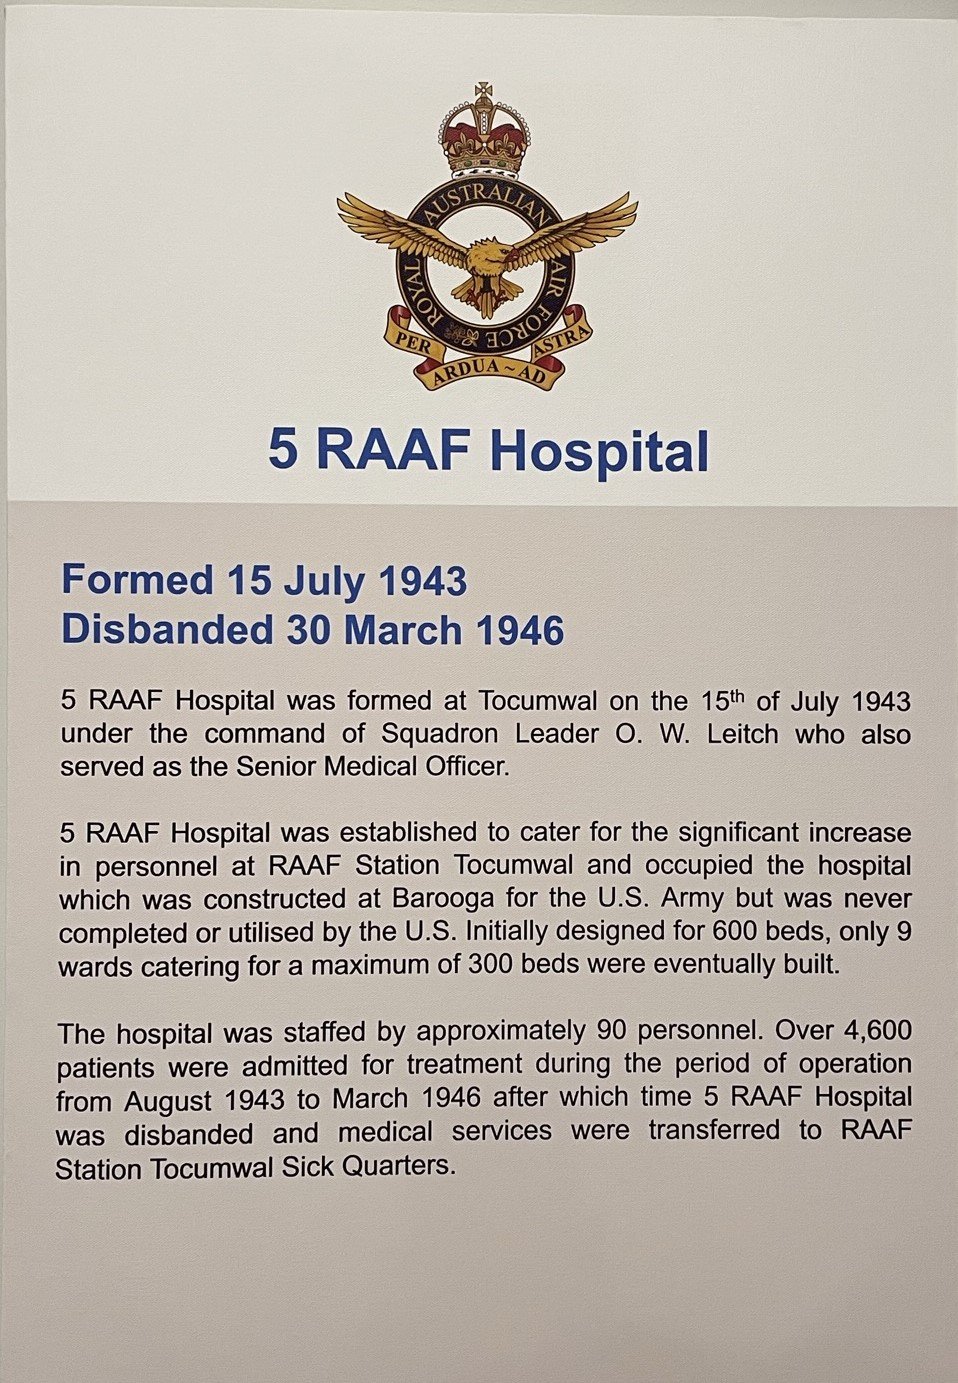 5 RAAF Hospital.JPEG